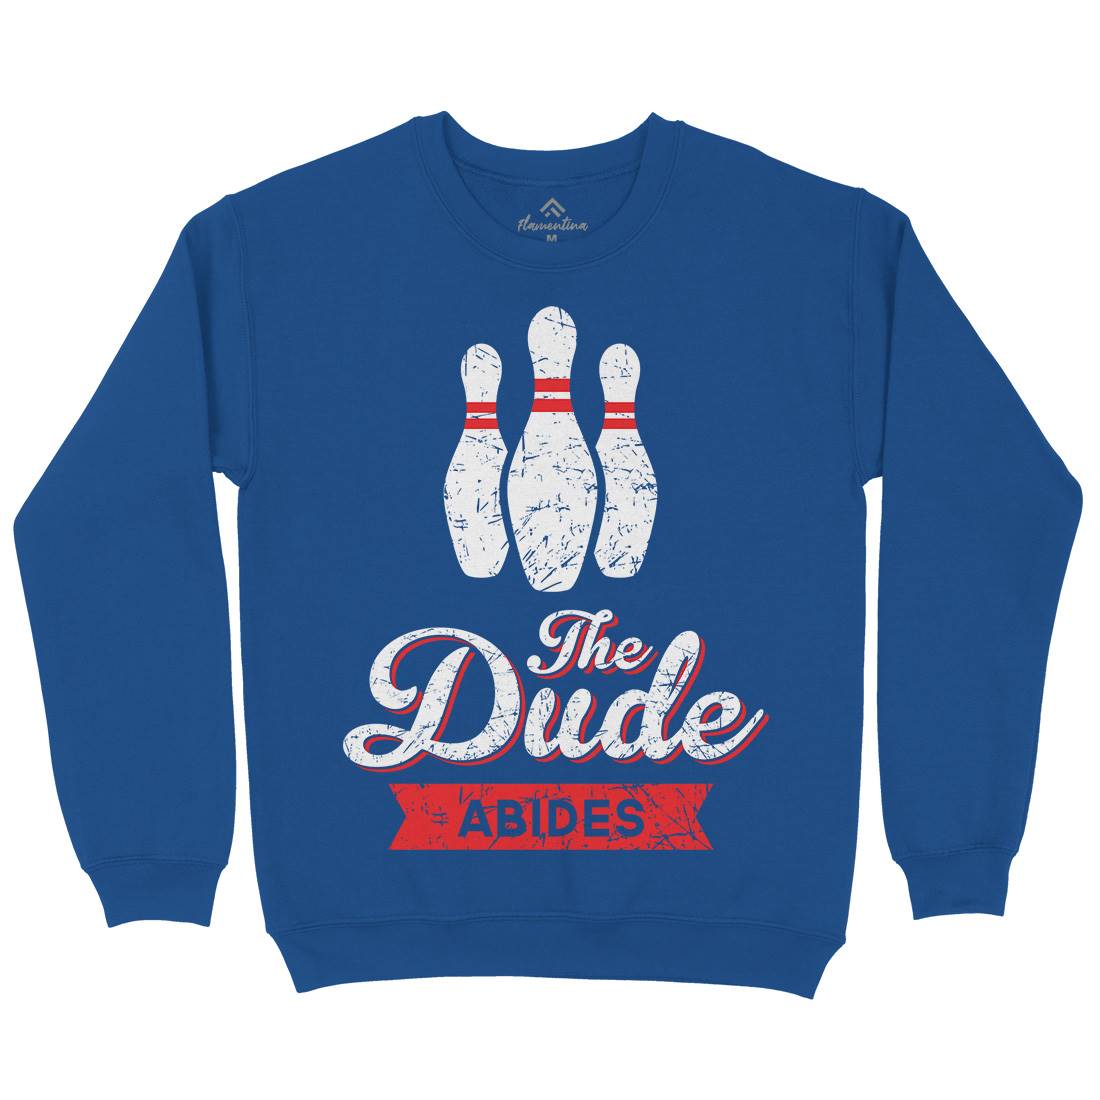 The Dude Kids Crew Neck Sweatshirt Sport D361